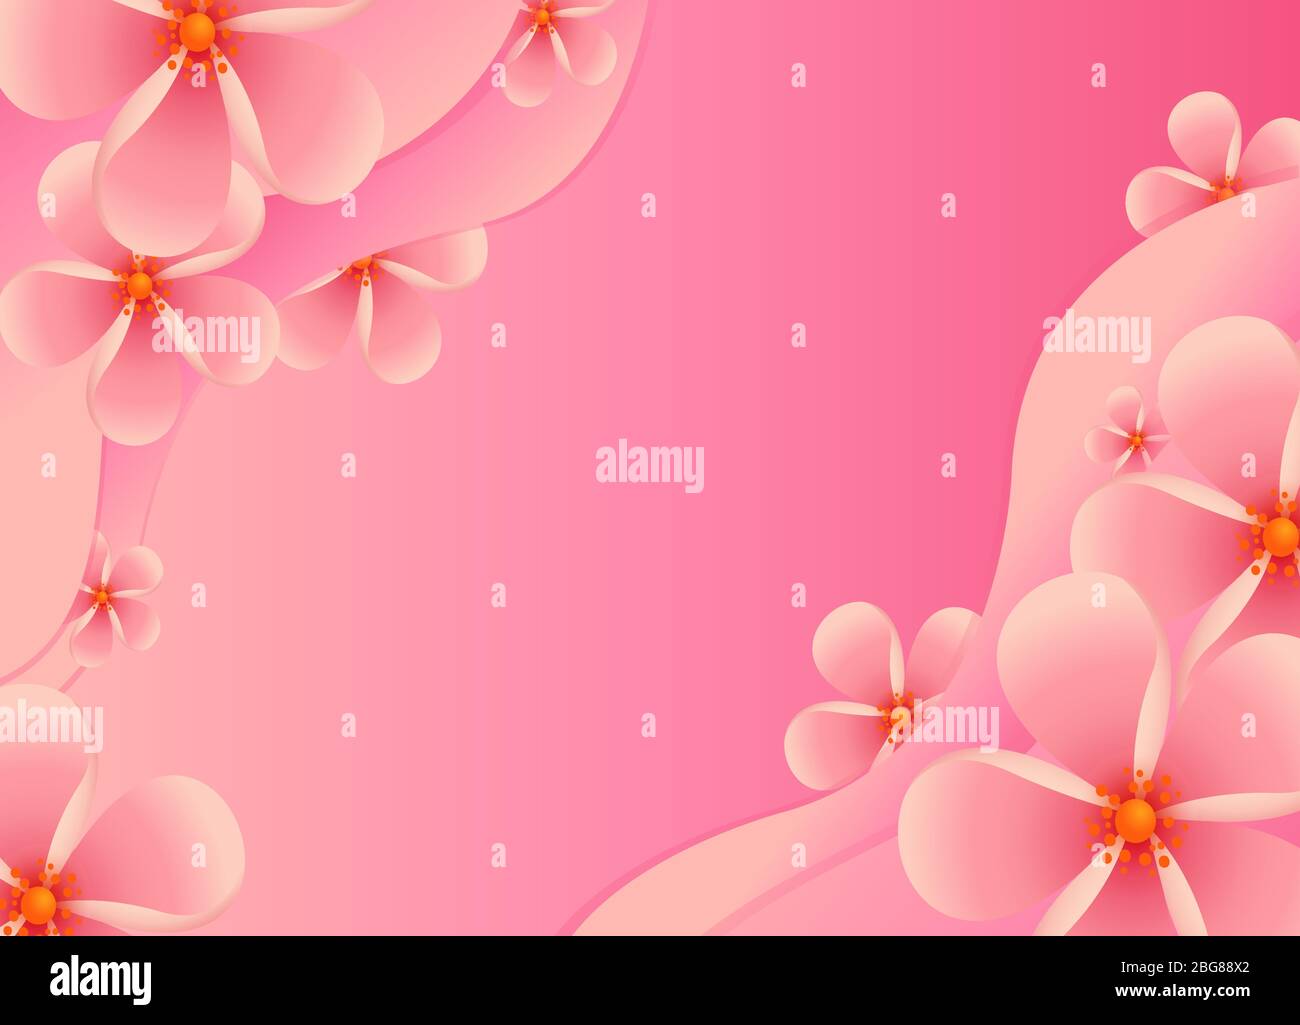 Kirschblüte Hintergrundbild. Sakura oder Kirschblüten-förmige Papierausschnitte auf rosa Hintergrund. Banner, Poster, Flyer mit Platz für Ihren Text. Stil mit ausgeschnittenem Papier. Stock Vektor